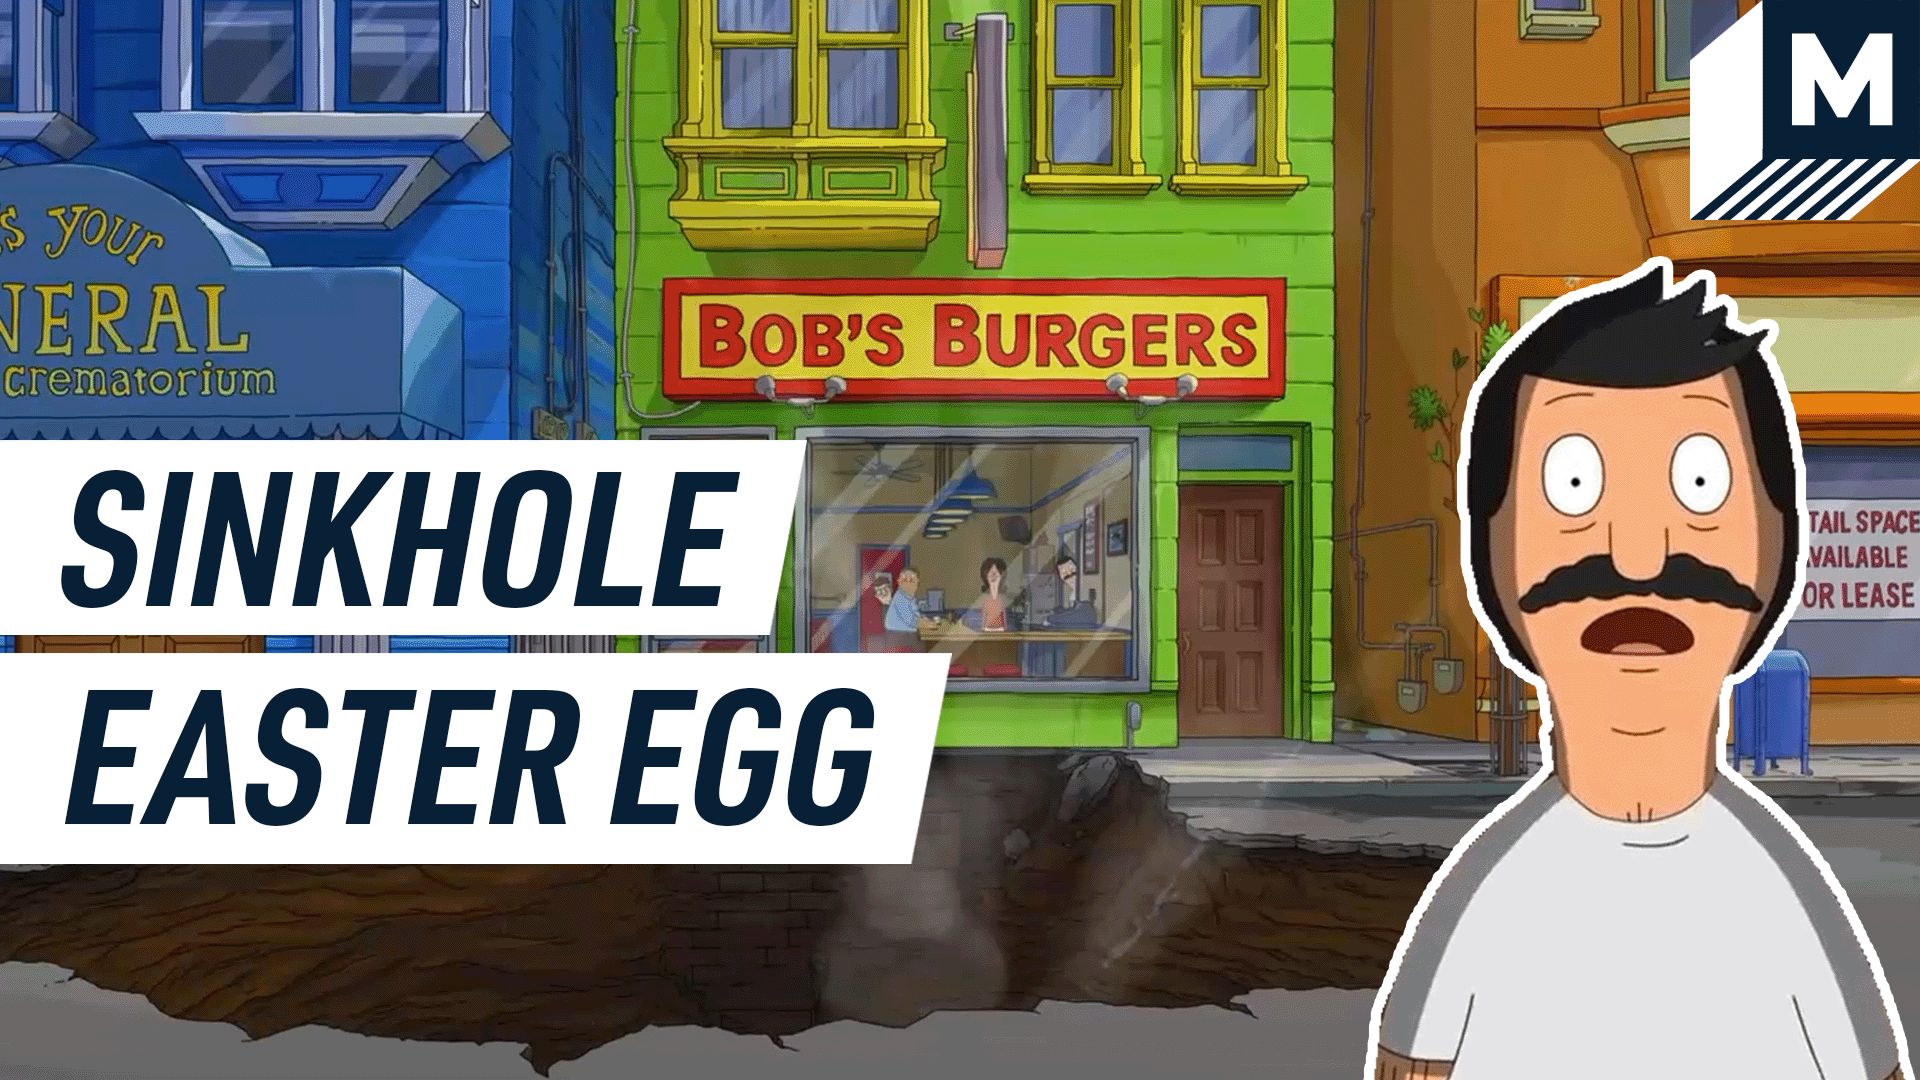 Bob's Burgers Sinkhole Easter Egg